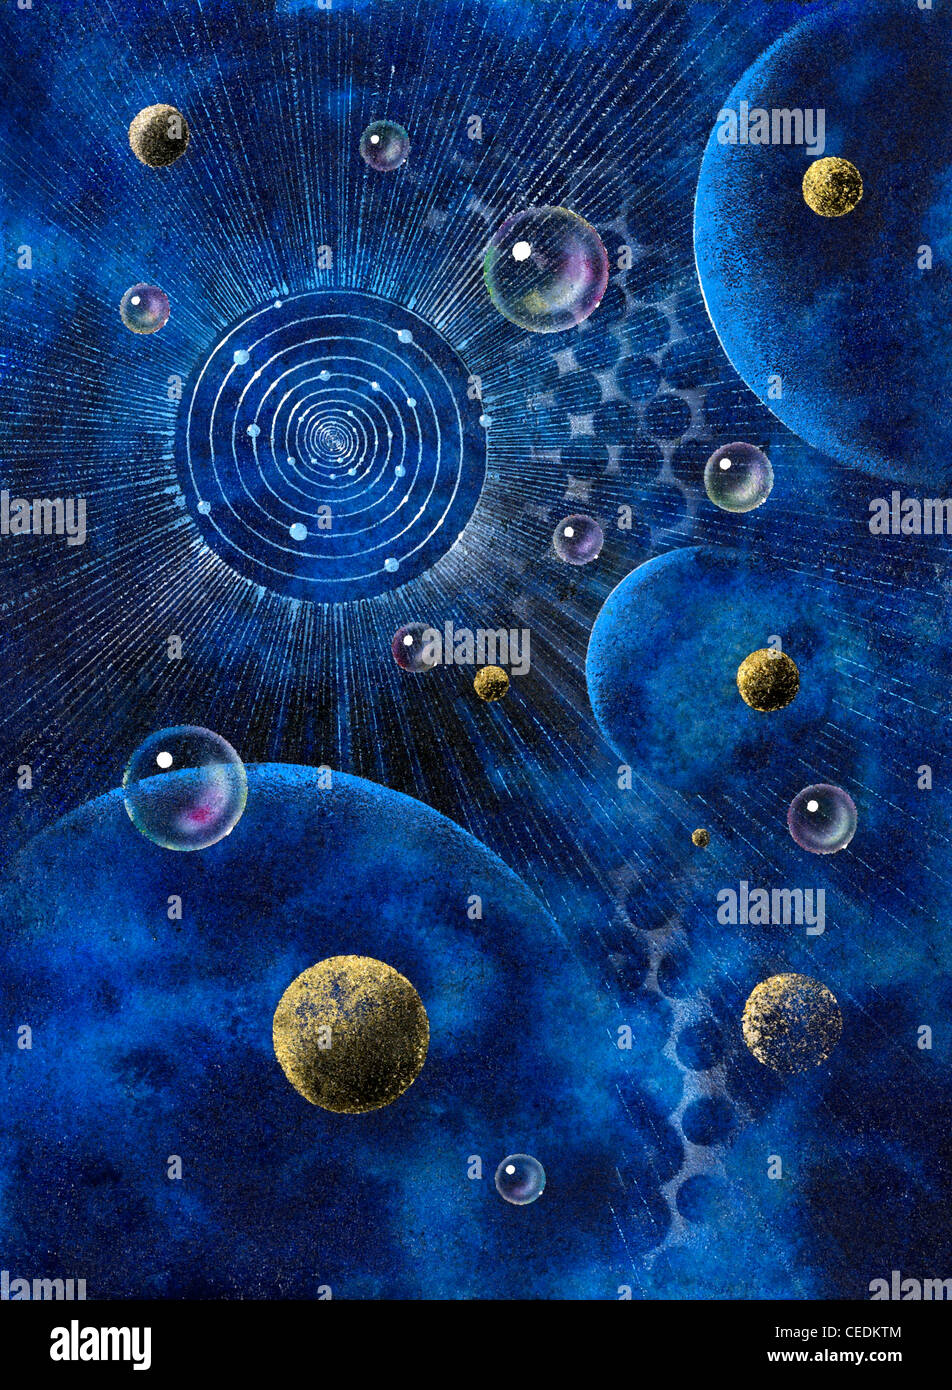 Cuadro pintado por mí, llamado 'Corona', que muestra una estructura similar a la corona, planetas y burbujas en azul espaciosos atrás Foto de stock